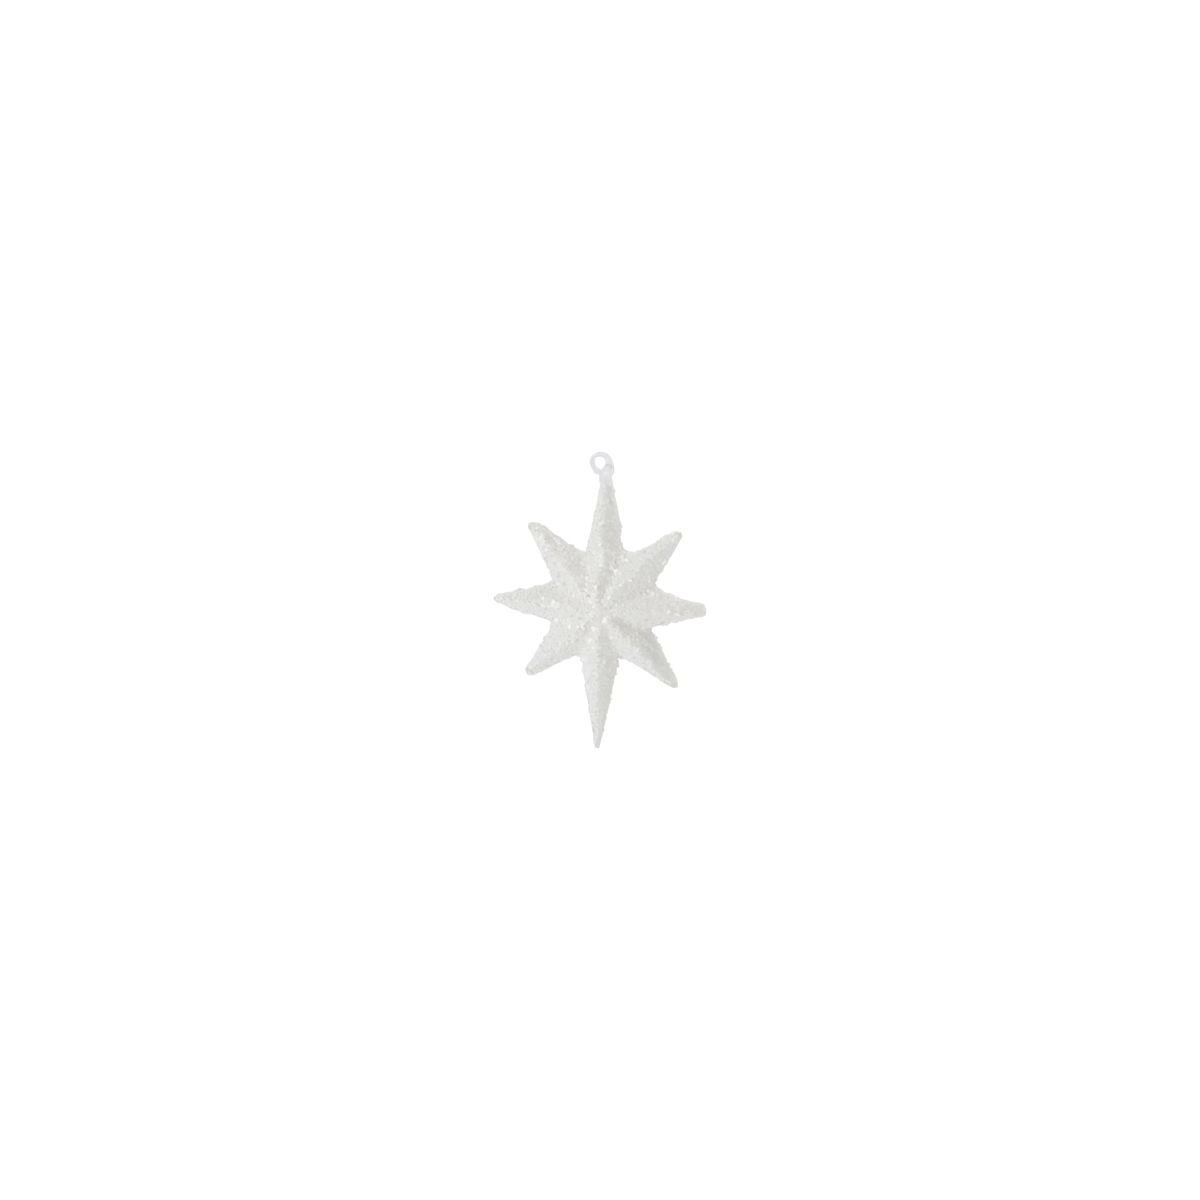 Billede af Julepynt, Chunky, med glimmer by House Doctor (H: 9.4 cm. B: 7 cm. L: 1.3 cm., Hvid)